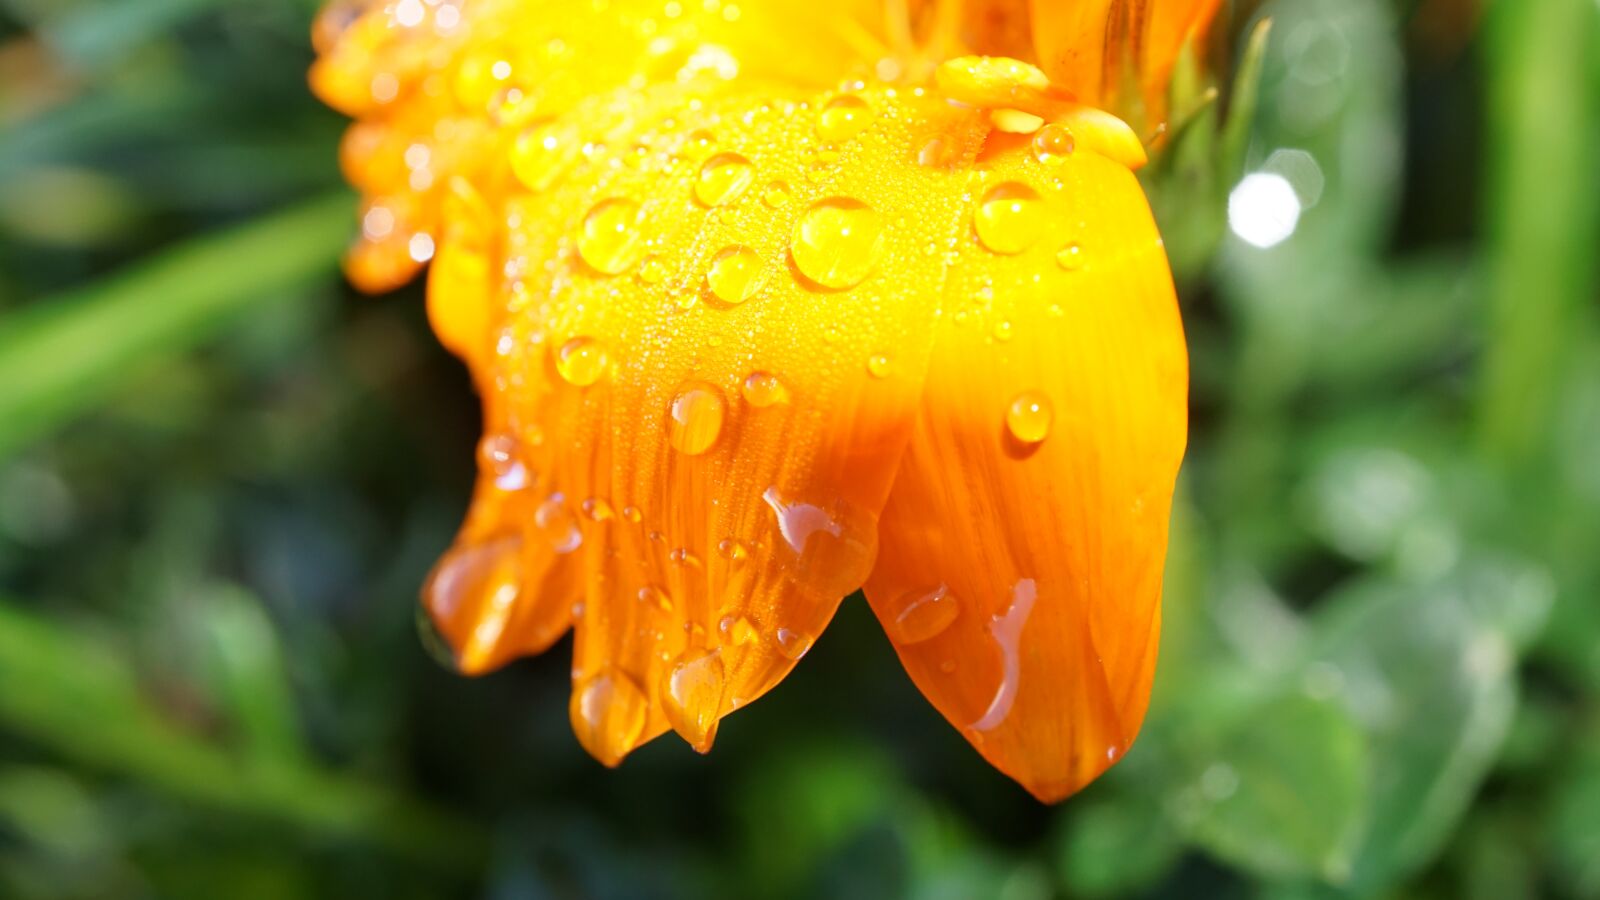 Sony a6000 + Sony E 30mm F3.5 Macro sample photo. Petals, orange blossom, rain photography